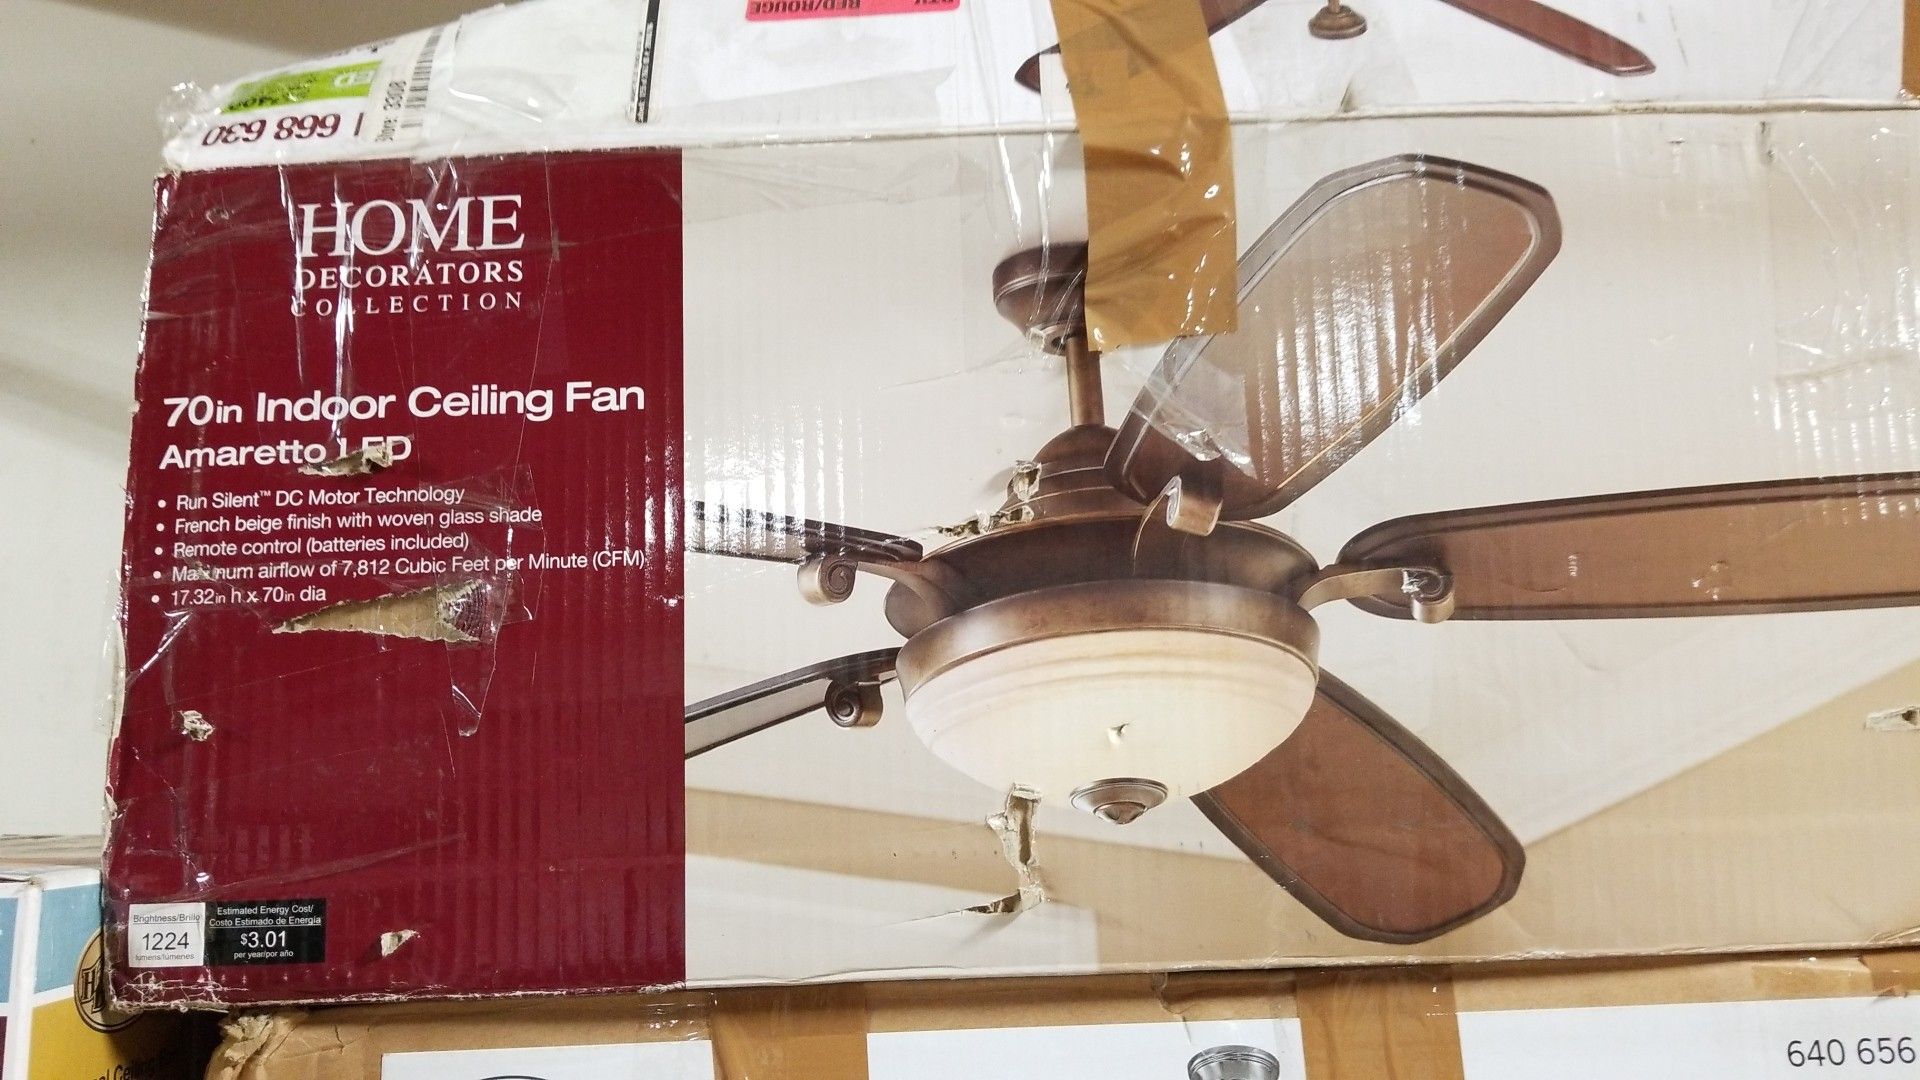 Large 70 in ceiling fan